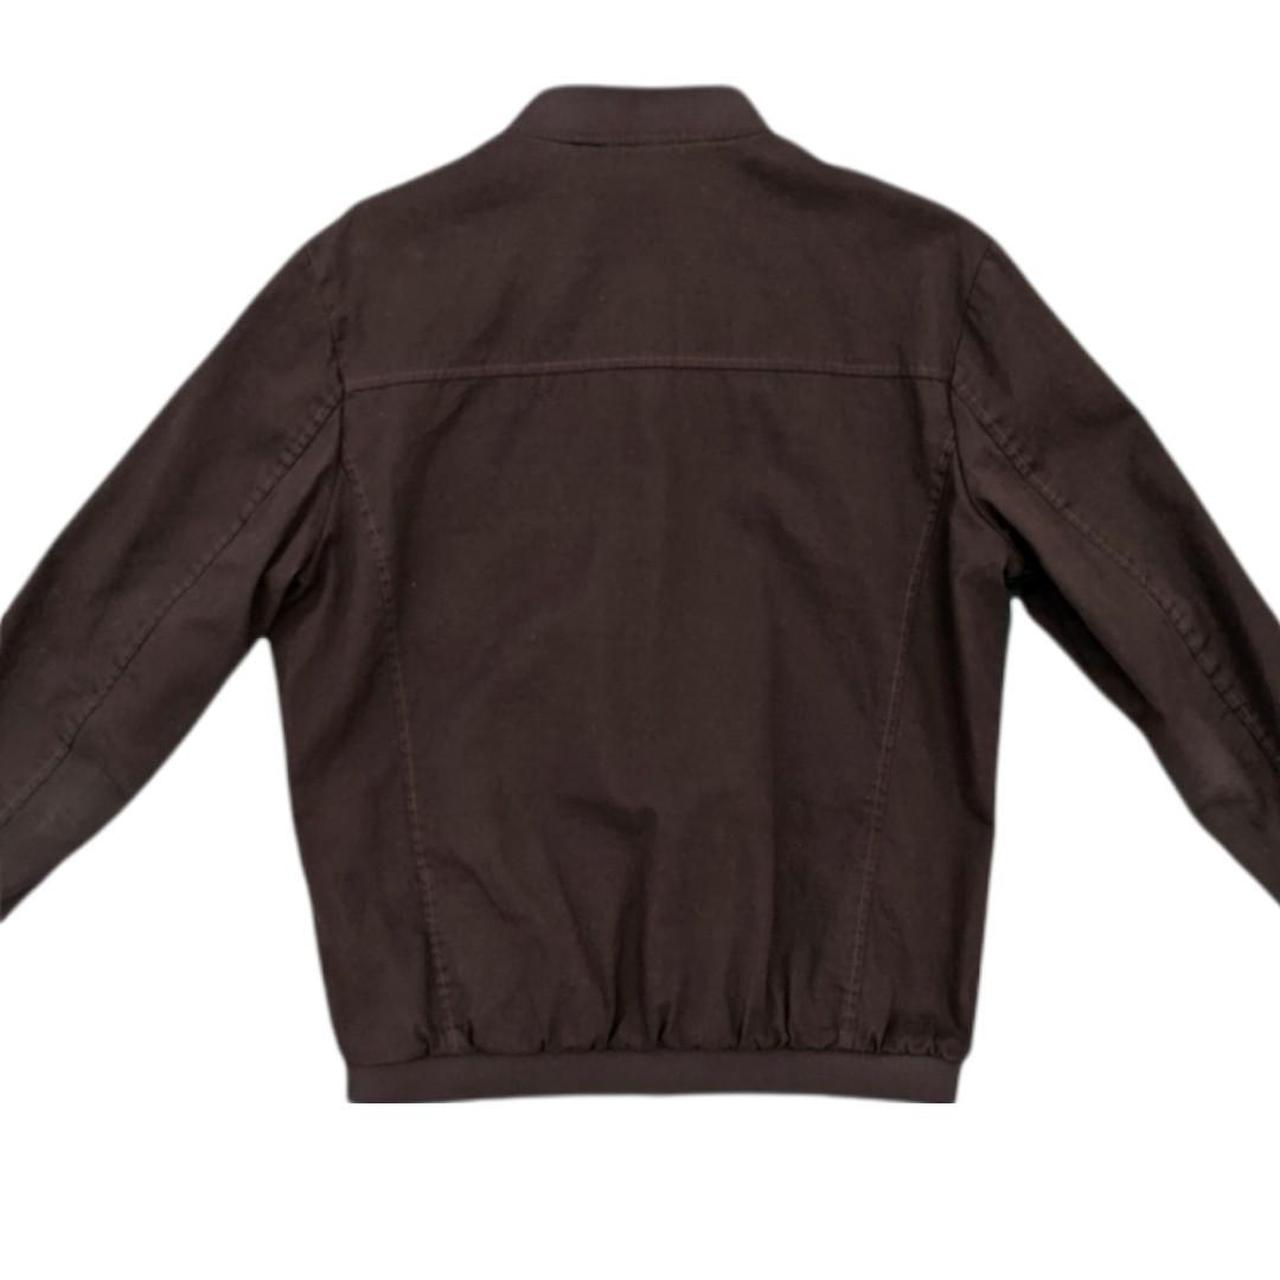 Product Image 4 - Men's Kamazaki Streetwear jacket size